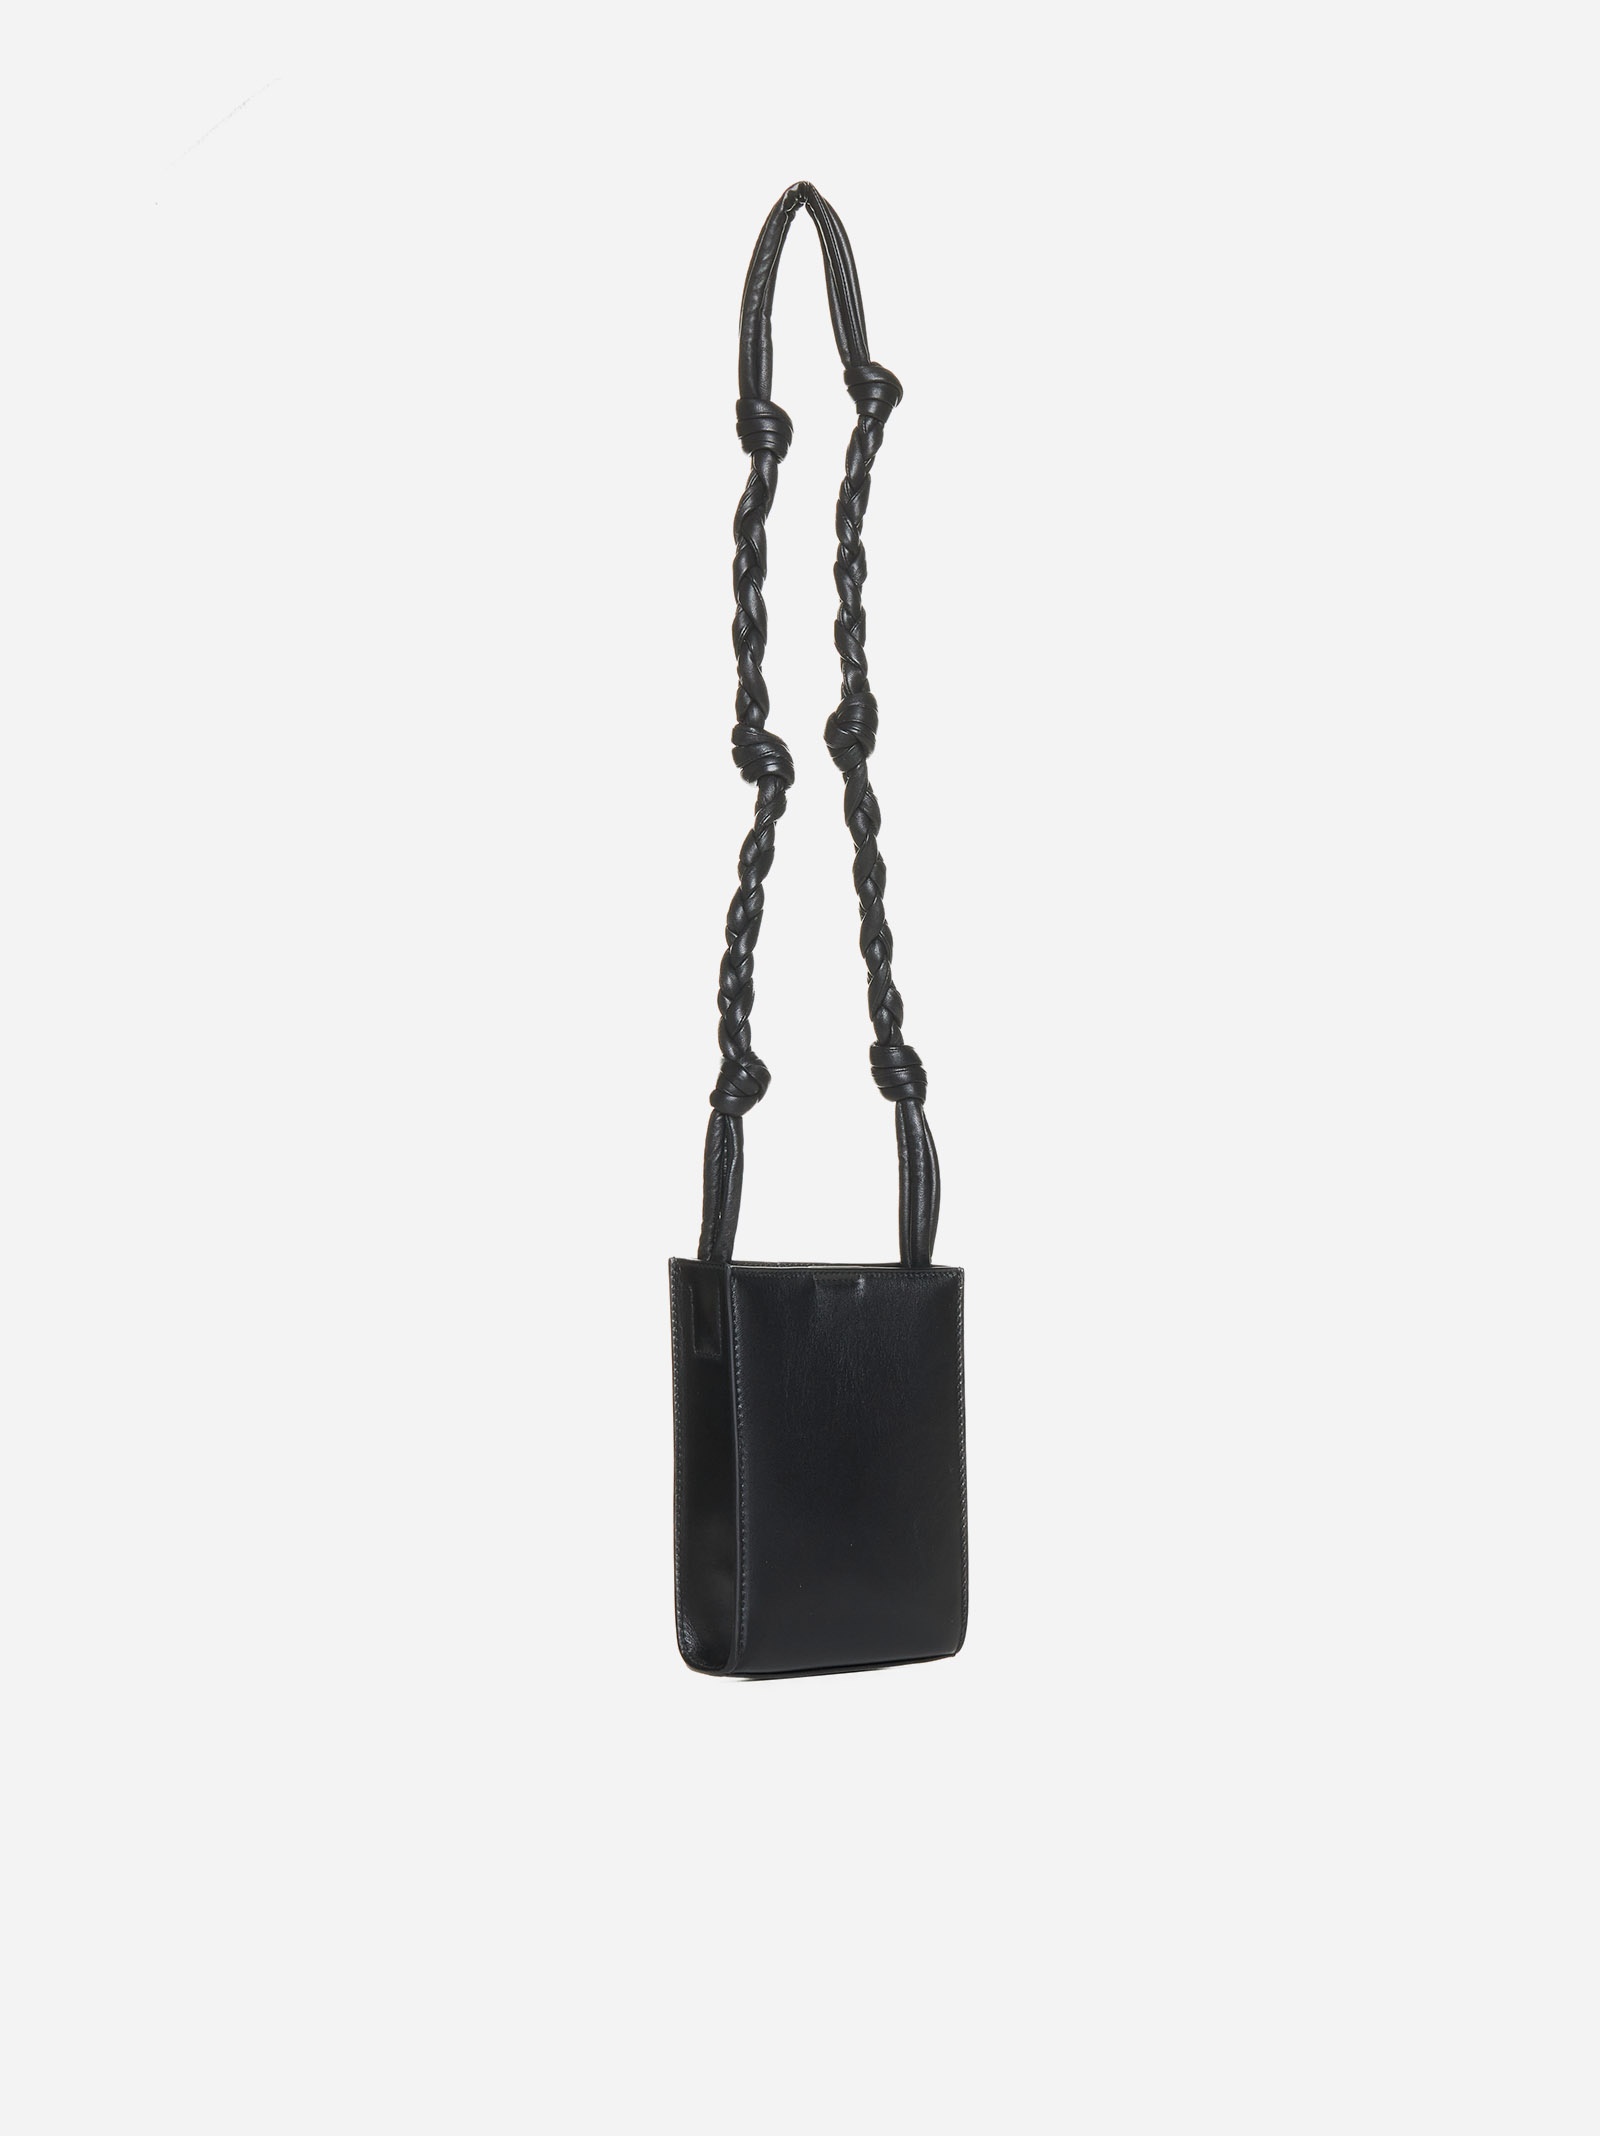 Tangle leather small bag - 3